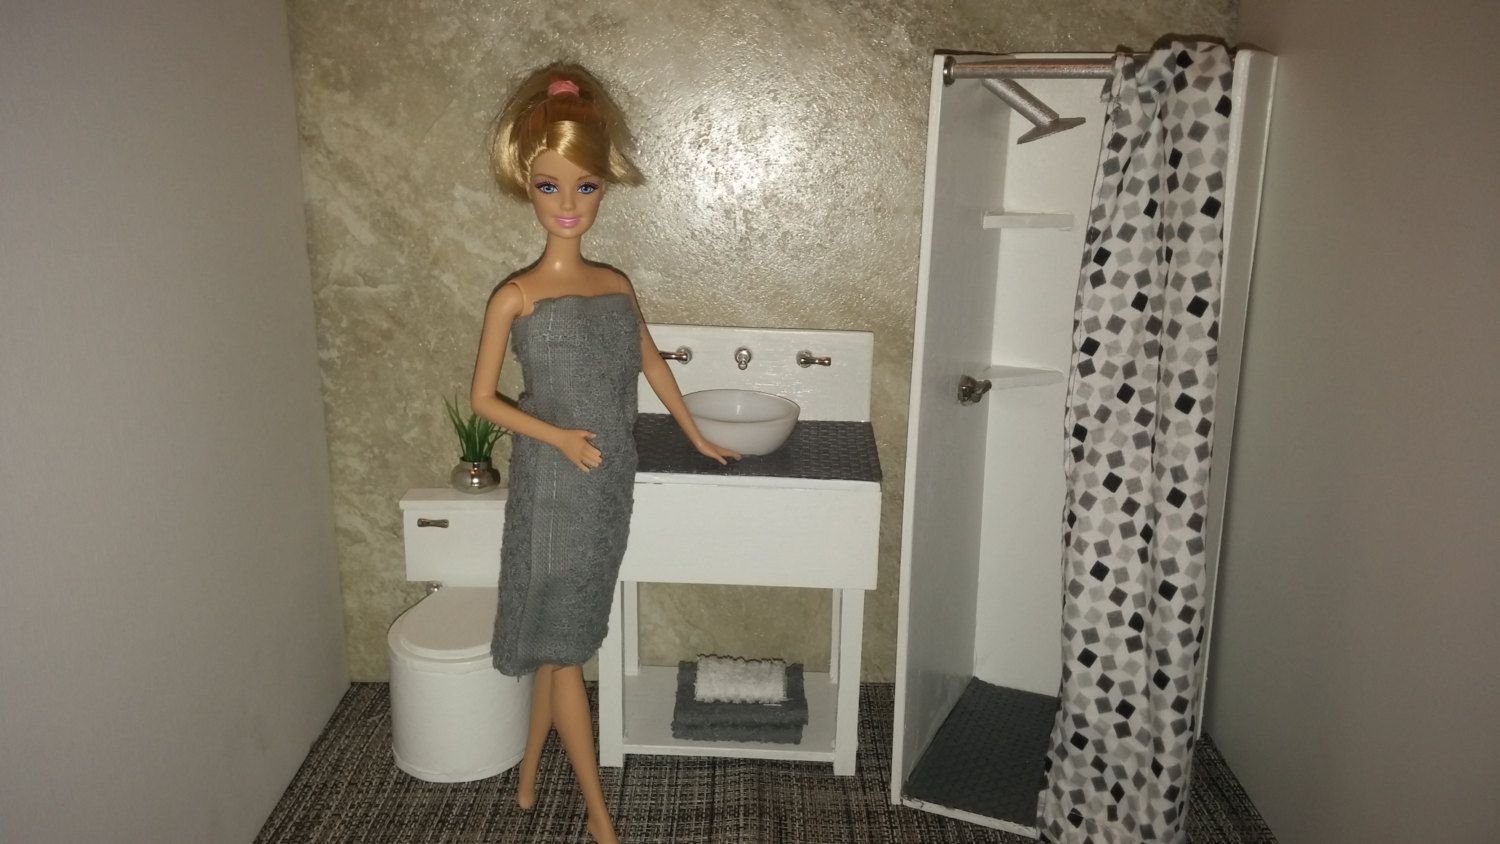 Мебель и аксессуары для Барби и других кукол своими руками: простые интересные идеи